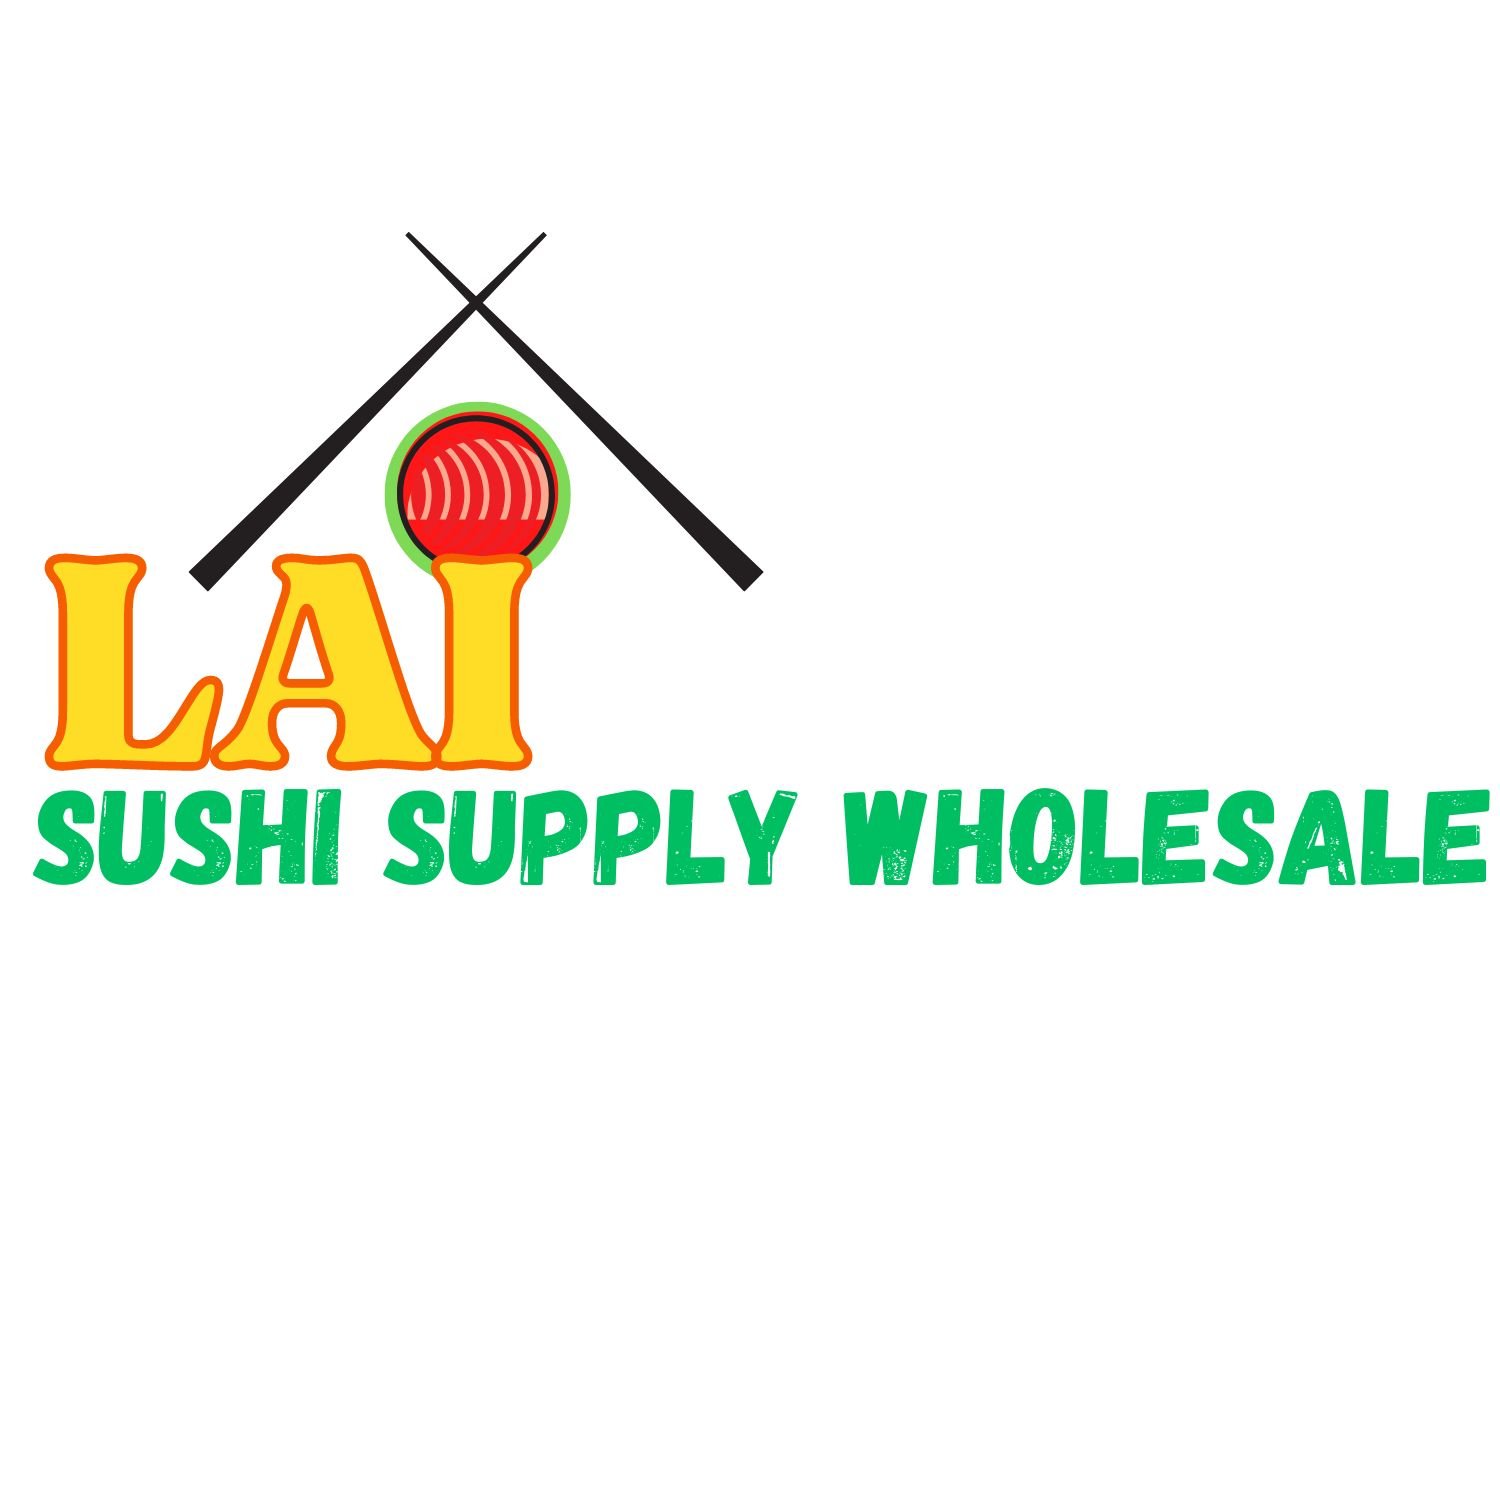 Lai Sushi Supply Wholesale